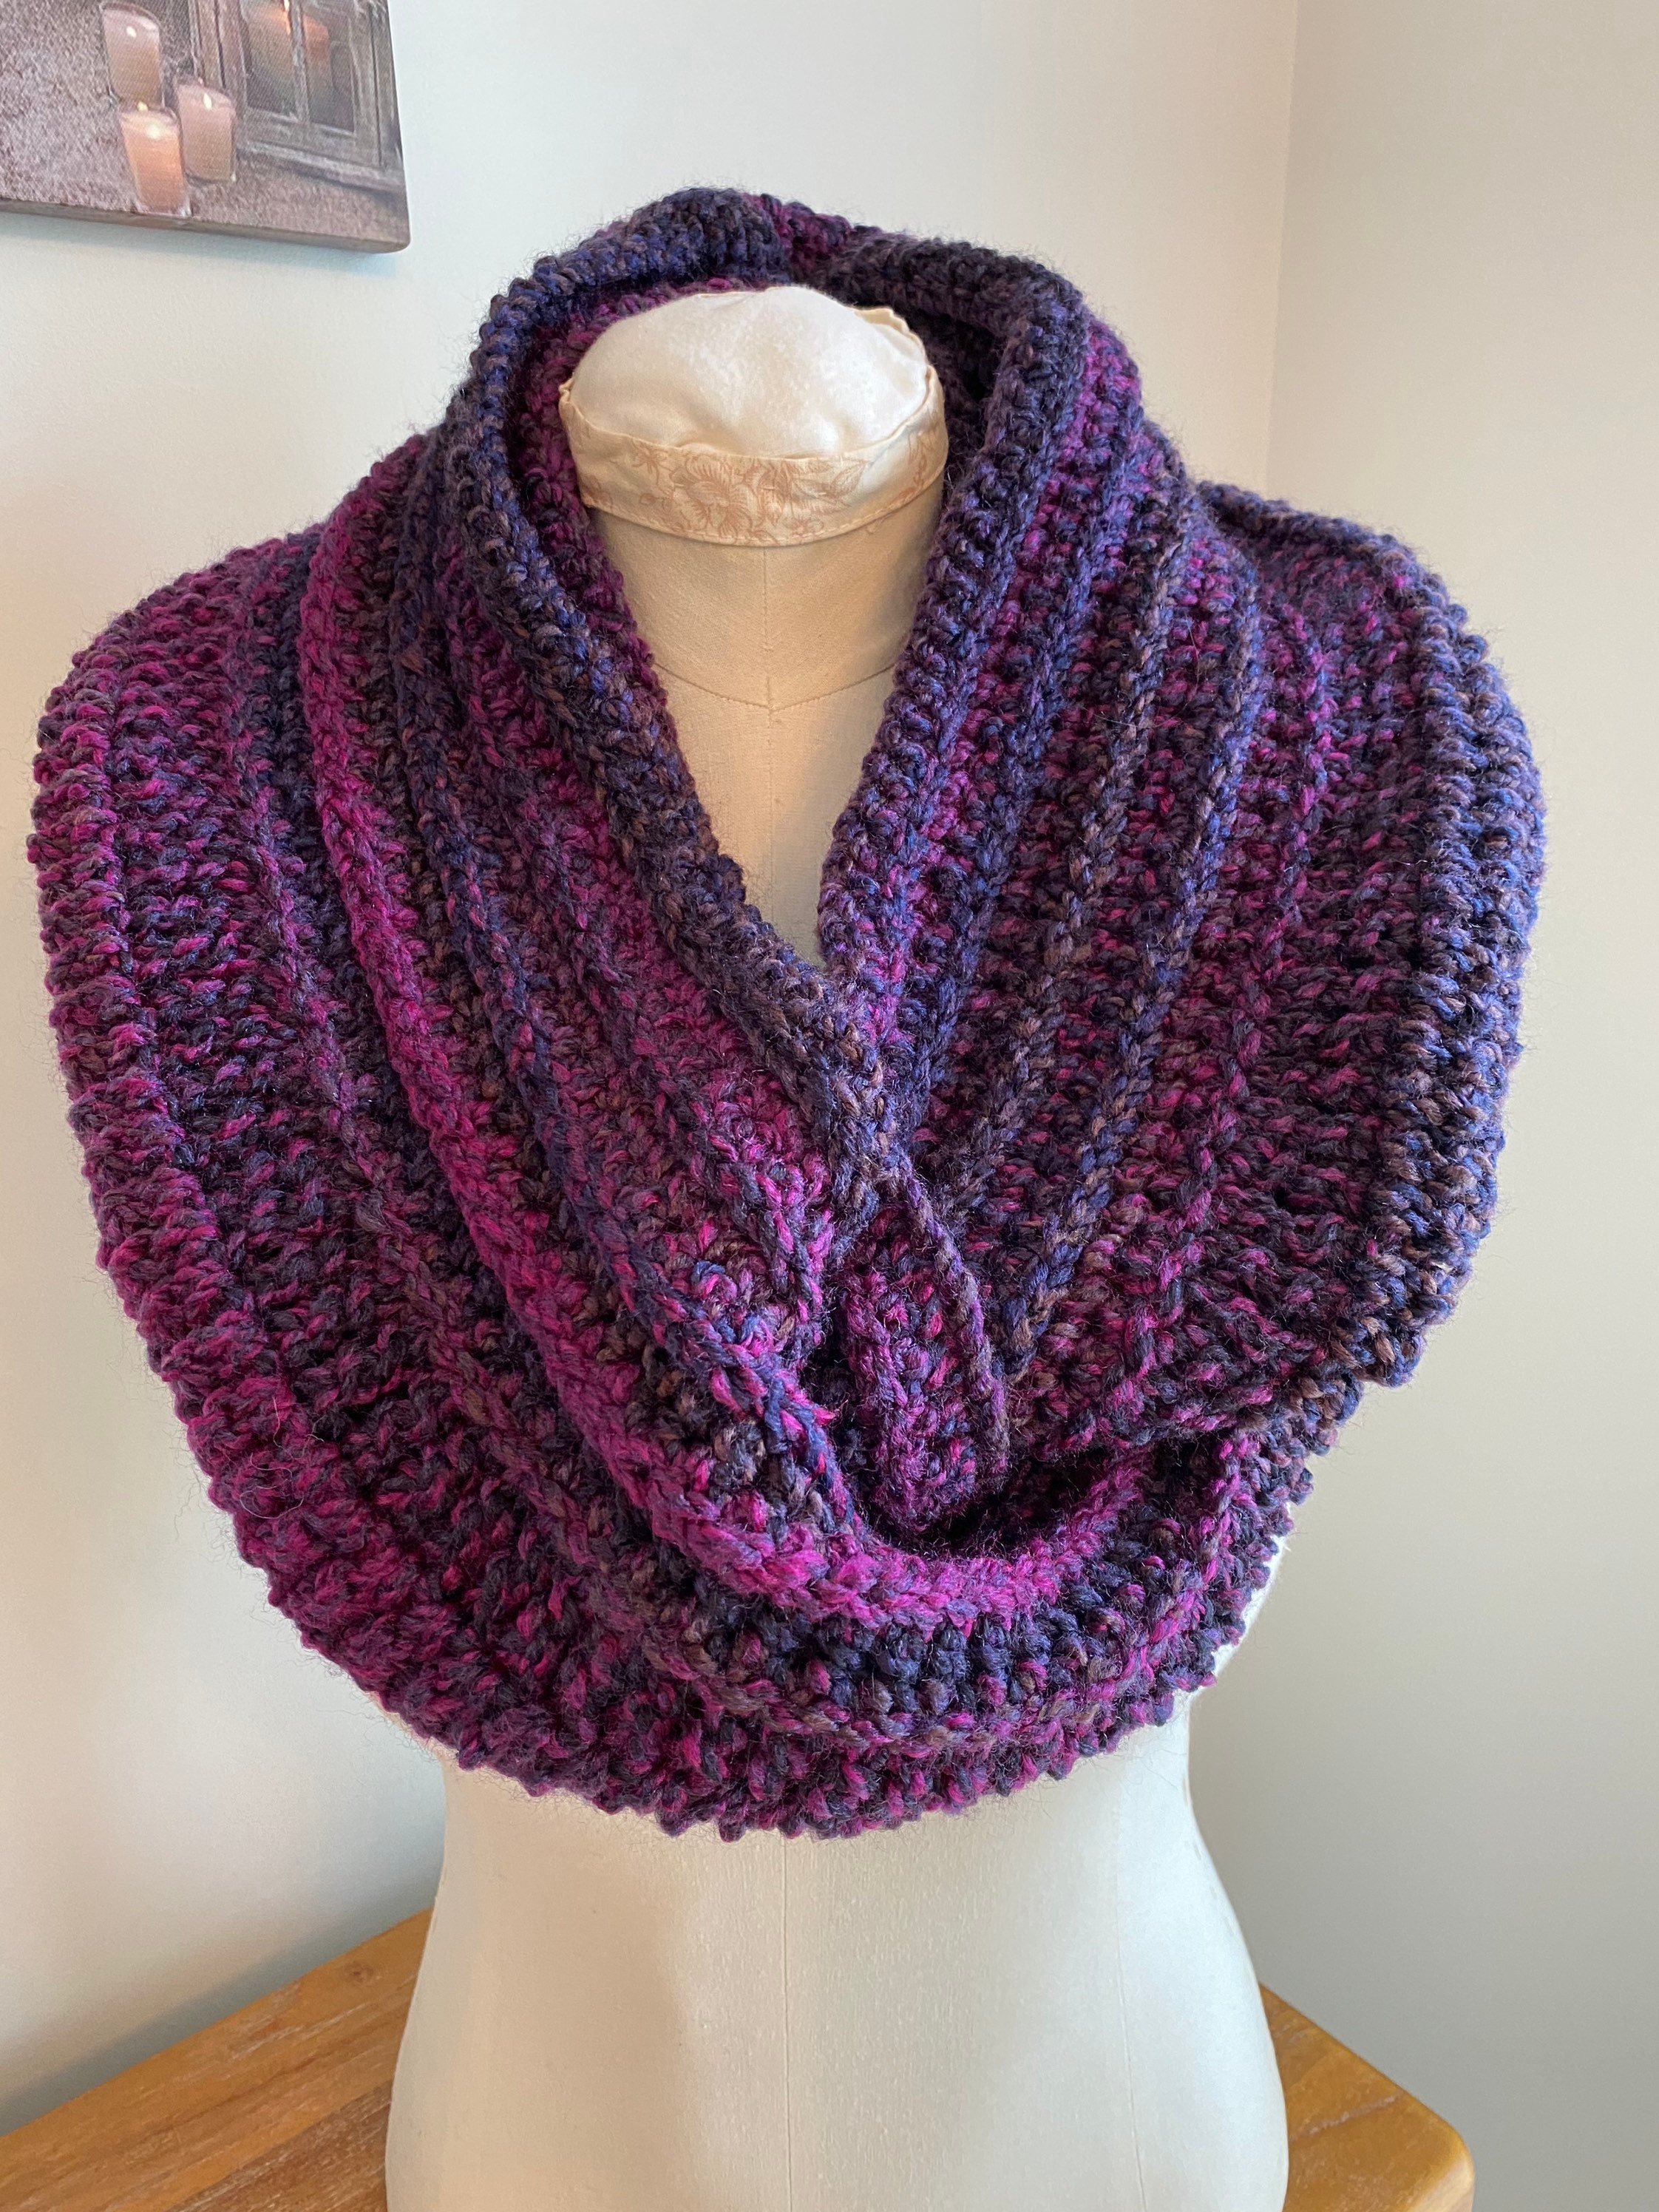 Kit Crochet New Beginning Infinity Scarf Cowl Kit Easy - Etsy UK